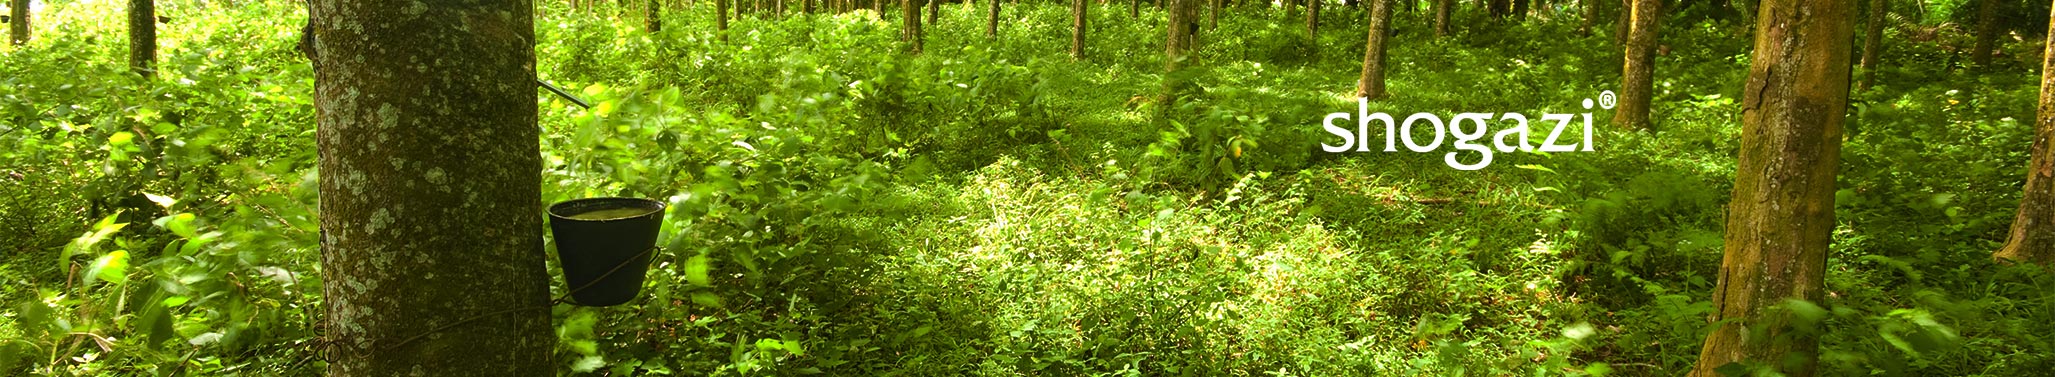 Wald mit Kautschukbäumen shogazi®